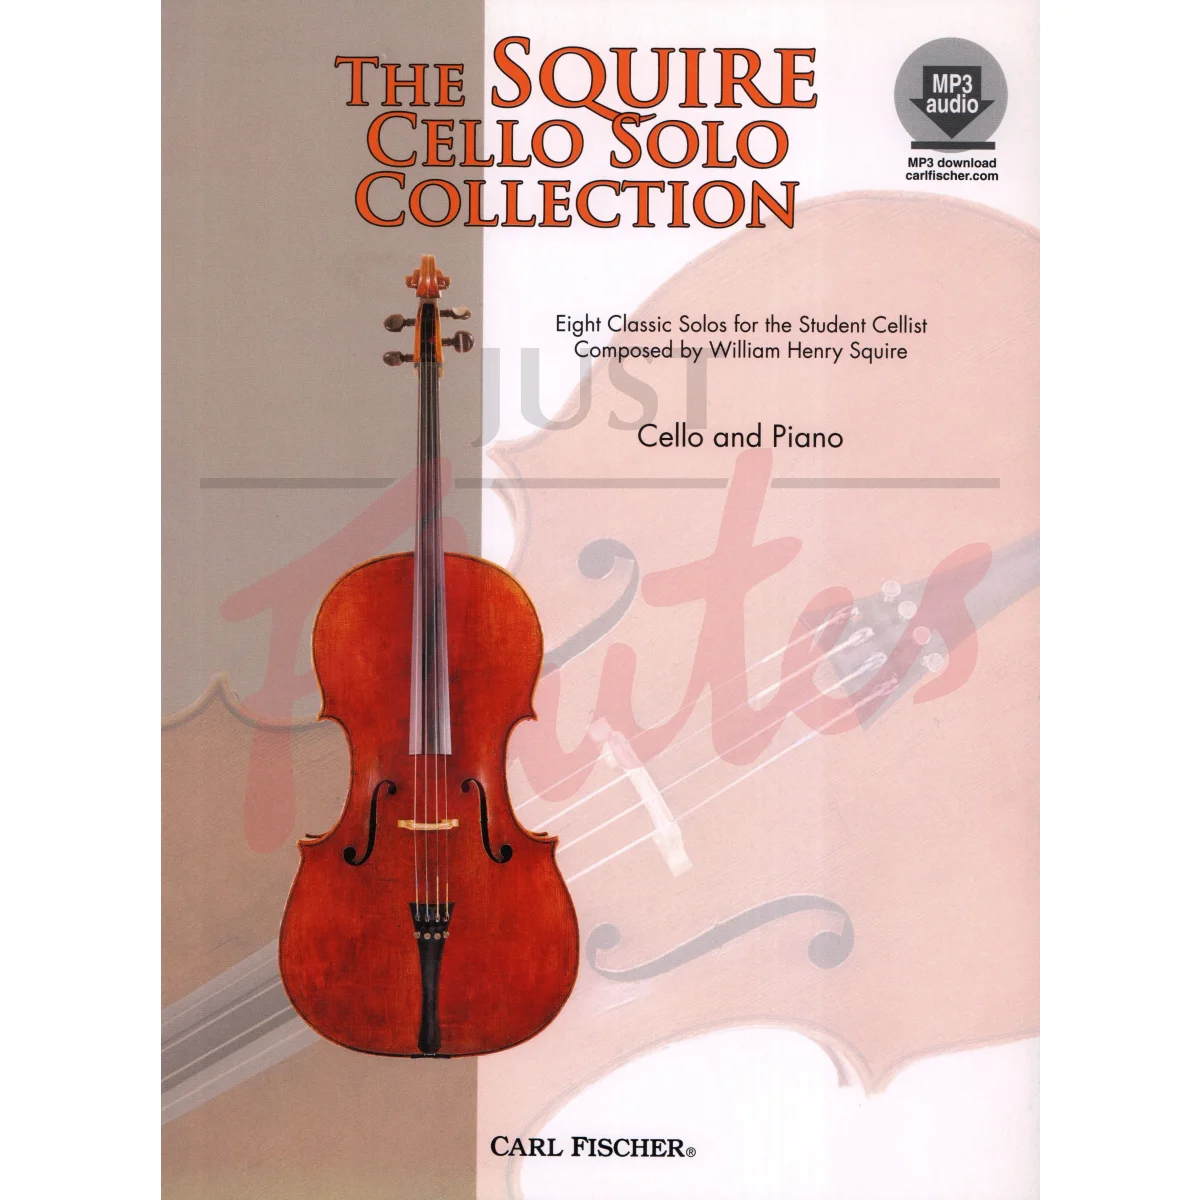 The Squire Cello Solo Collection for Cello and Piano